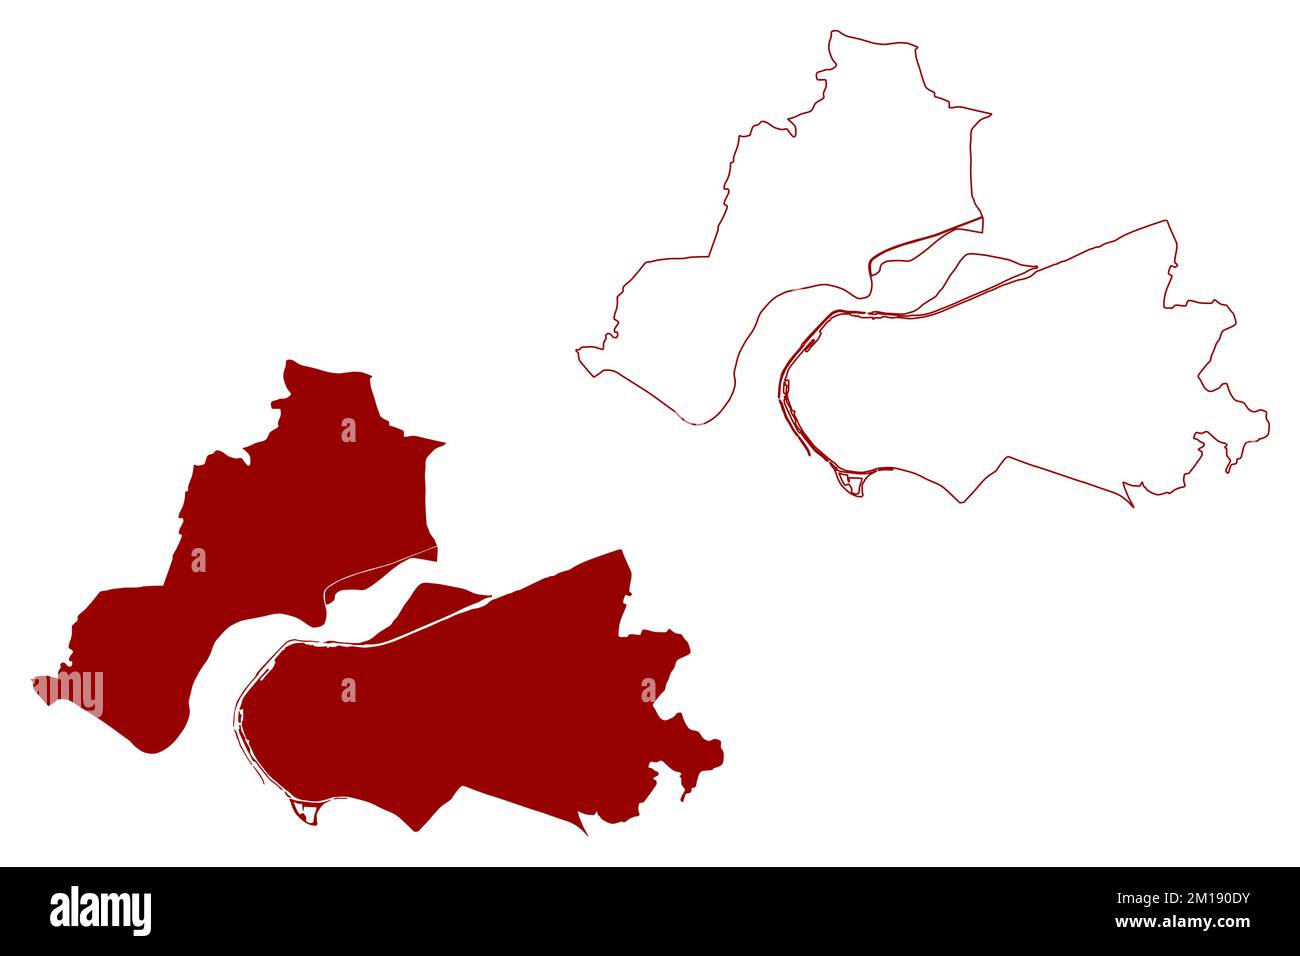 Borough and Unitary Authority of Halton (Vereinigtes Königreich Großbritannien und Nordirland, Ceremonial County Cheshire, England) map Vector illustr Stock Vektor